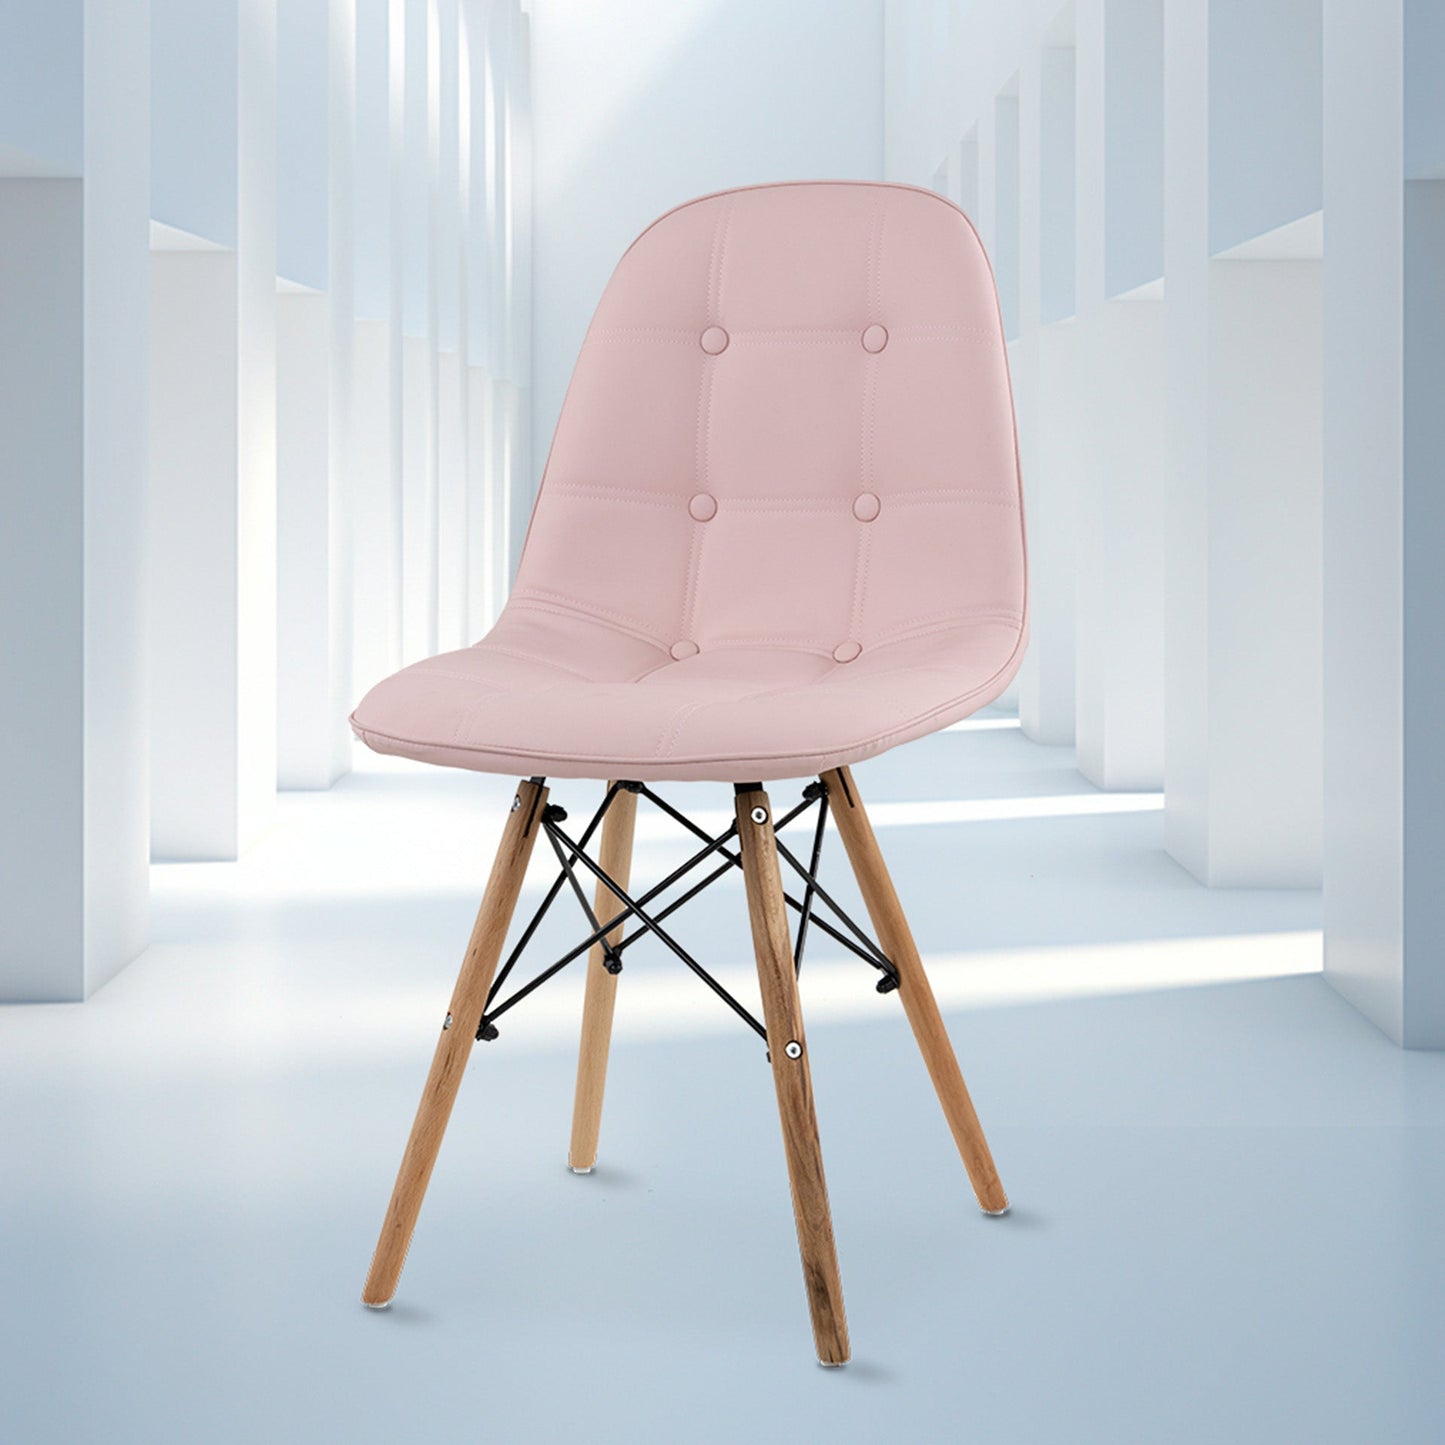 Frente completo de la silla shell con botones de color rosa.  Silla Moderna Eames con Botones Elegante y Vanguardista | Silla de Comedor, Oficina, Sala de Estar Estilo Minimalista | Varios Colores (Rosa)